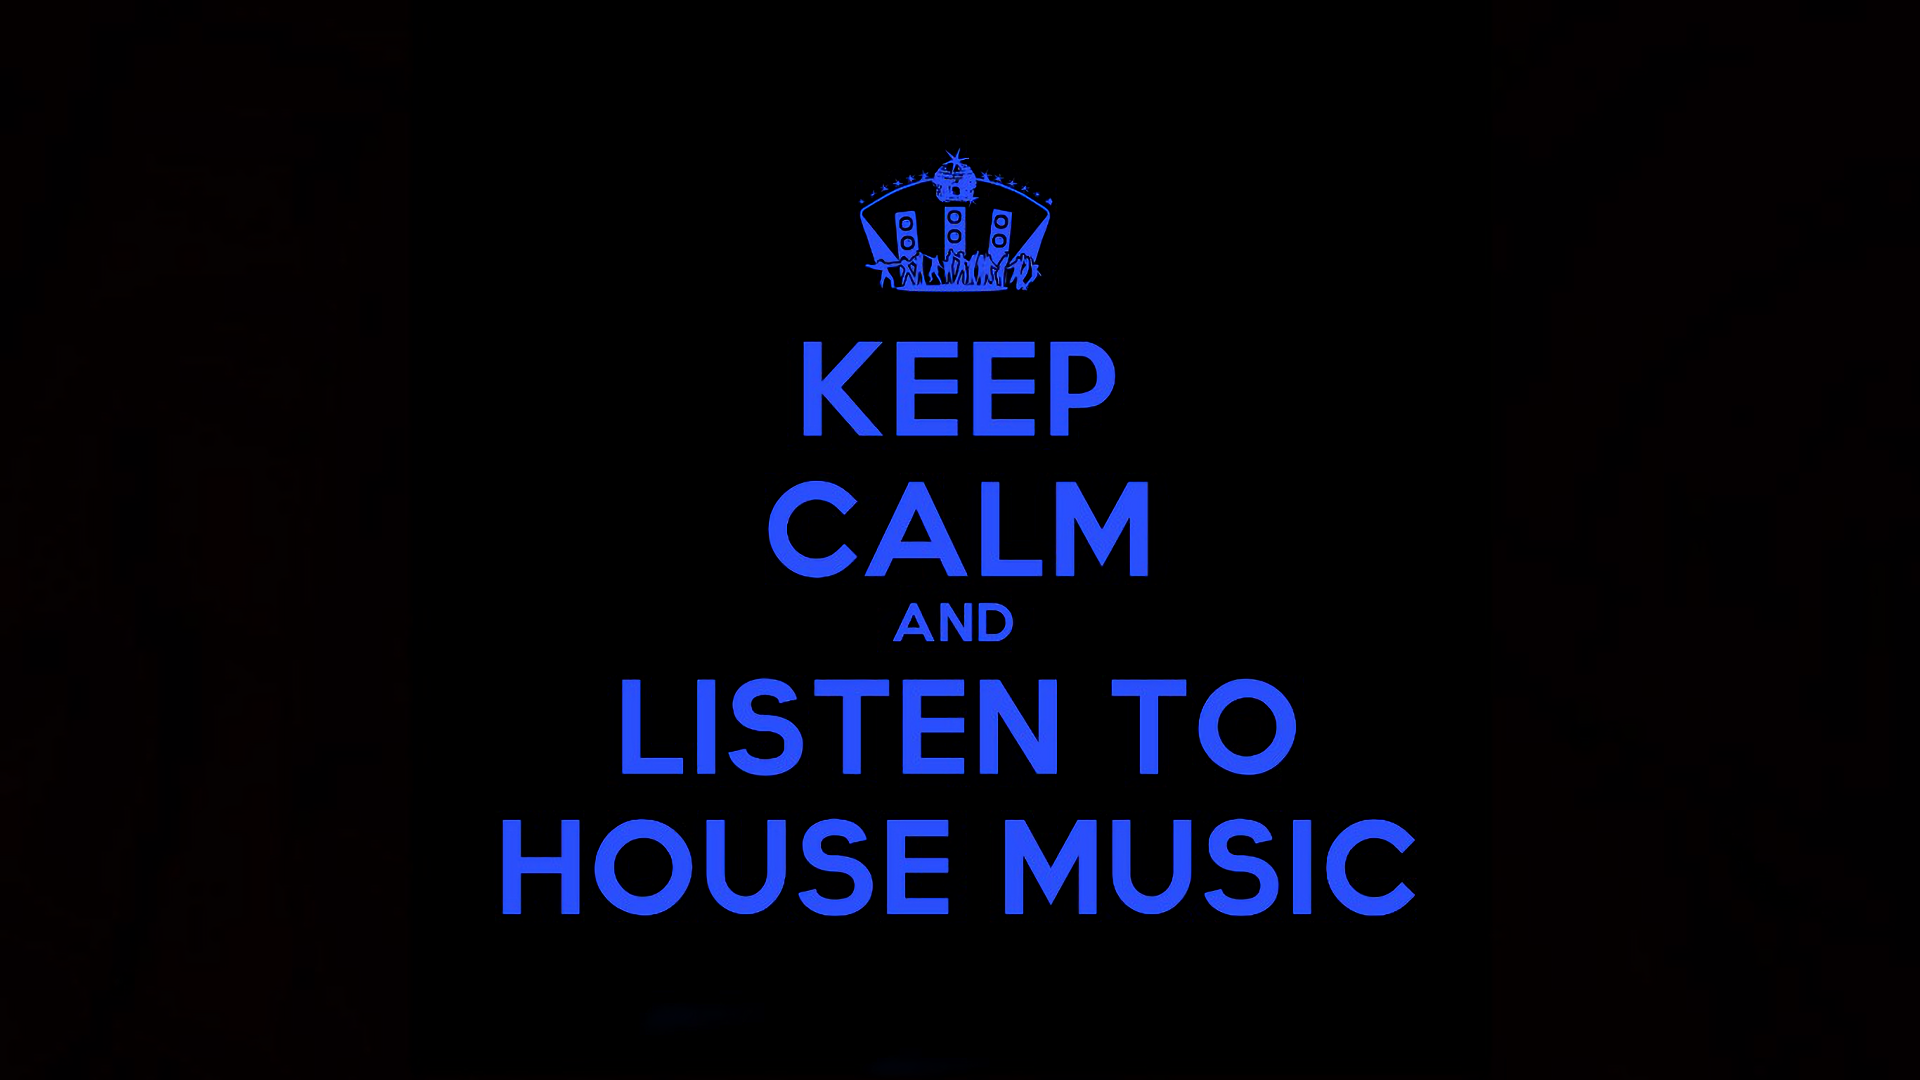 Слушать house music. House Music картинки. House Music обои. Хаус музыка картинки. Keep Calm and listen to House Music.